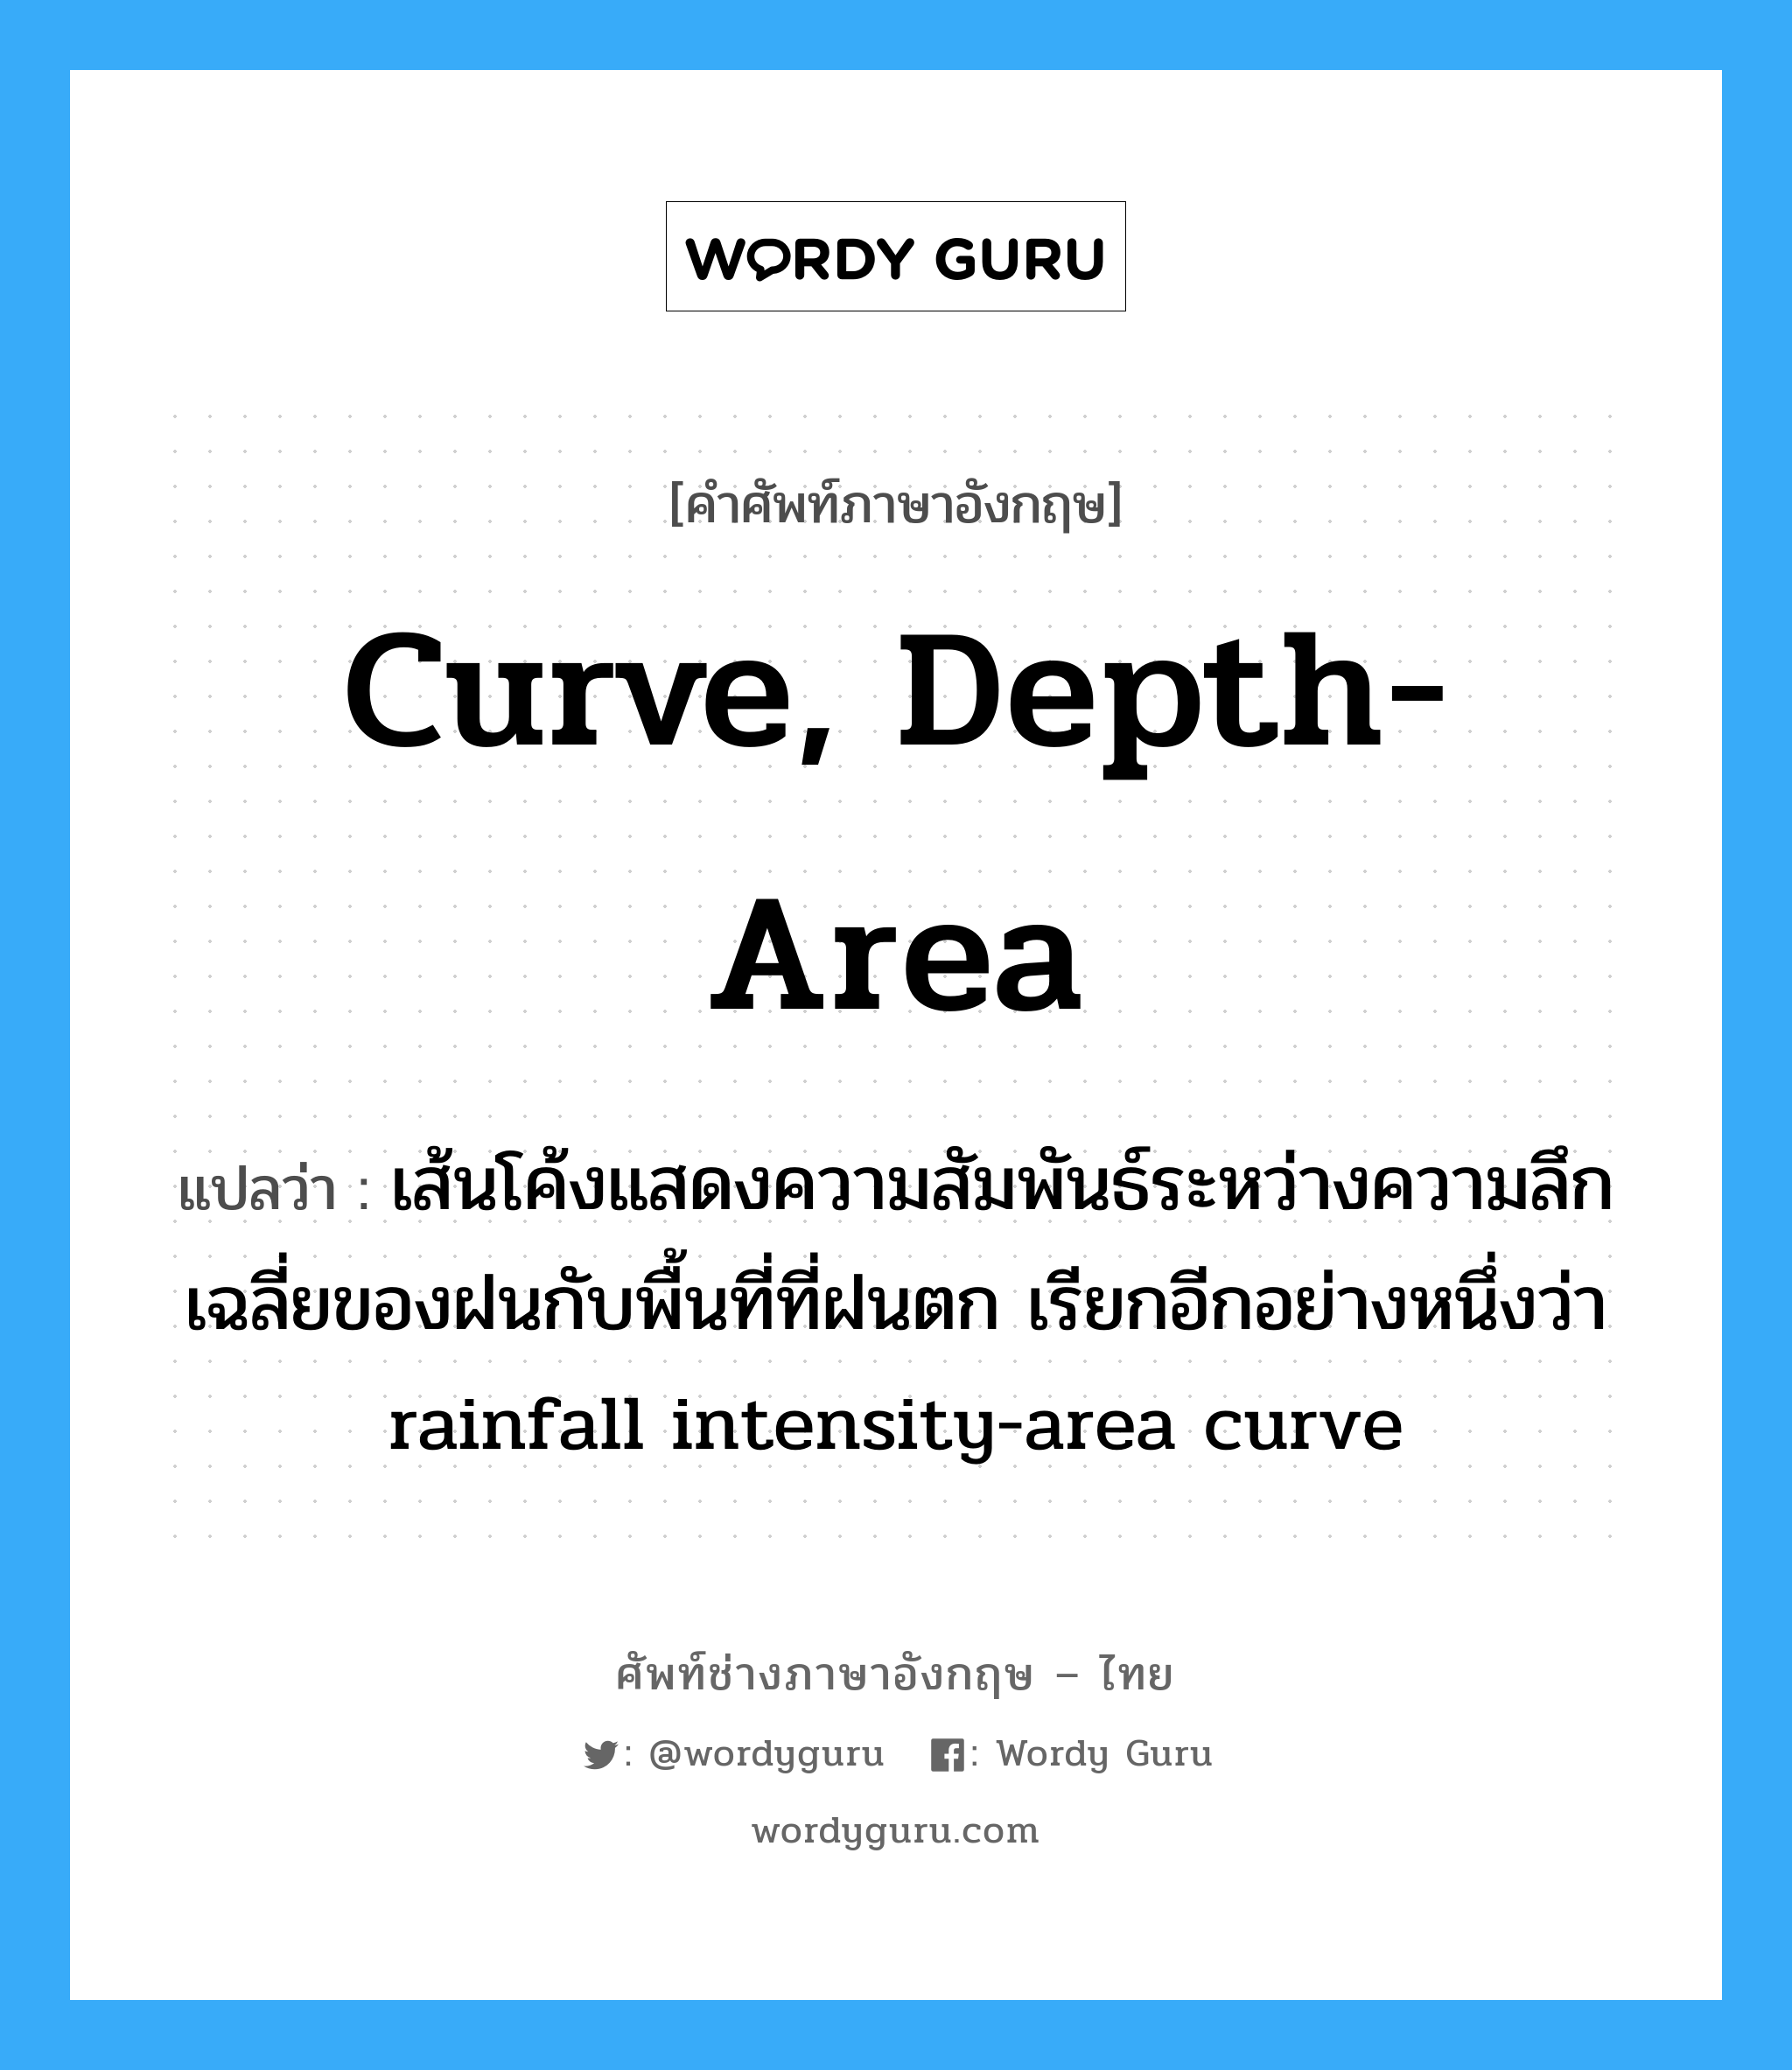 curve, depth-area แปลว่า?, คำศัพท์ช่างภาษาอังกฤษ - ไทย curve, depth-area คำศัพท์ภาษาอังกฤษ curve, depth-area แปลว่า เส้นโค้งแสดงความสัมพันธ์ระหว่างความลึกเฉลี่ยของฝนกับพื้นที่ที่ฝนตก เรียกอีกอย่างหนึ่งว่า rainfall intensity-area curve